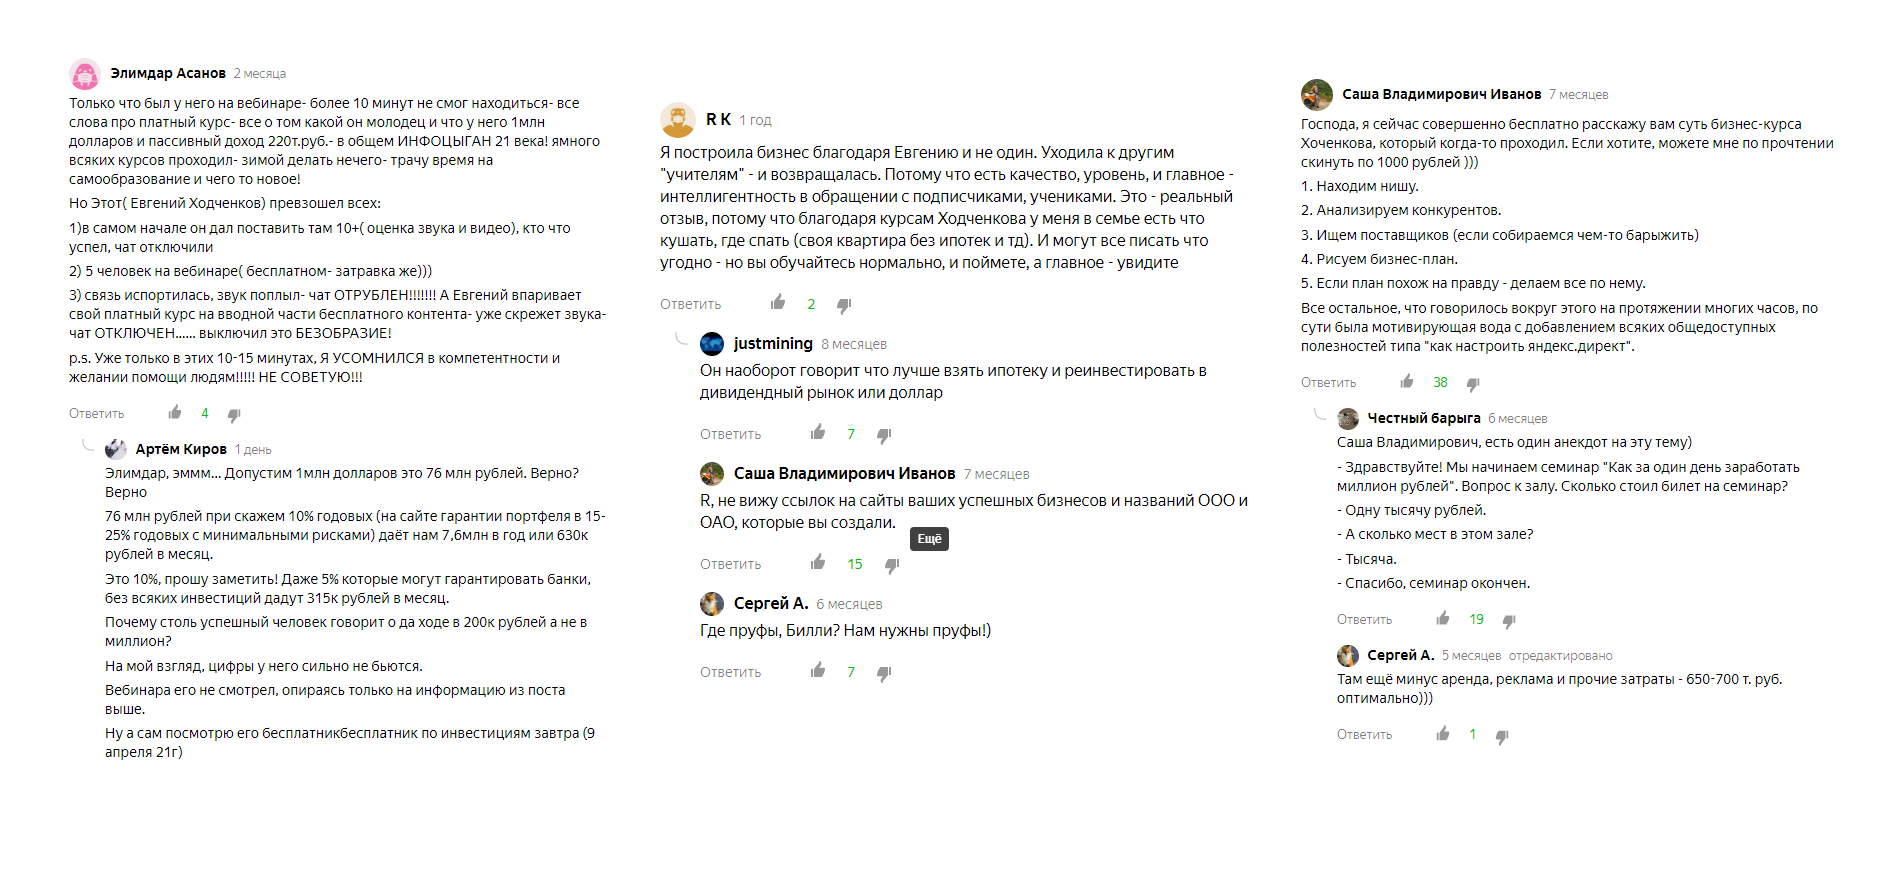 Отзывы о деятельности Евгения Ходченкова